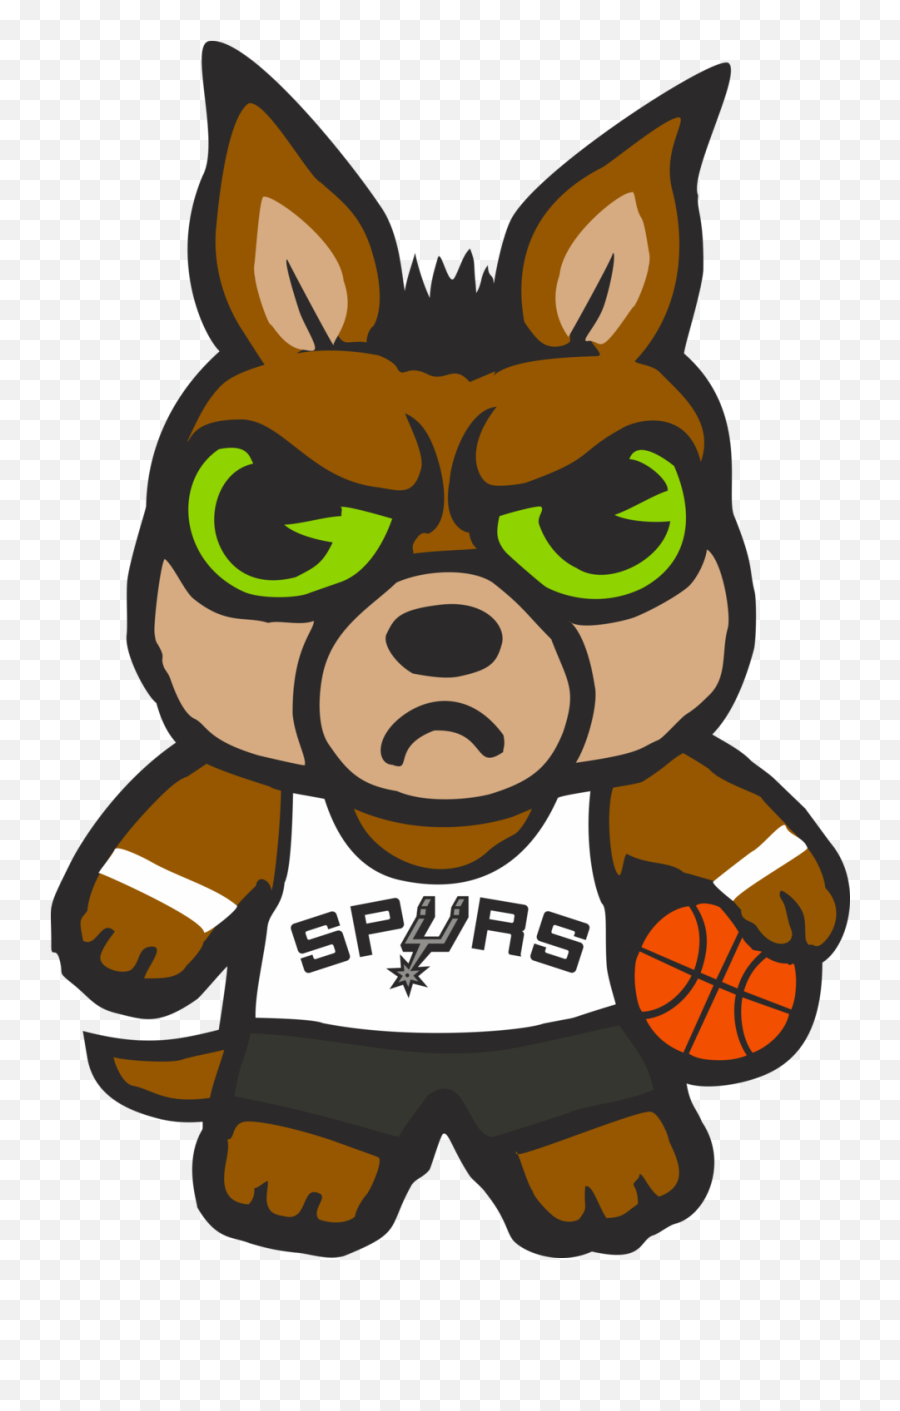 San Antonio Spurs - San Antonio Spurs Png,San Antonio Spurs Logo Png